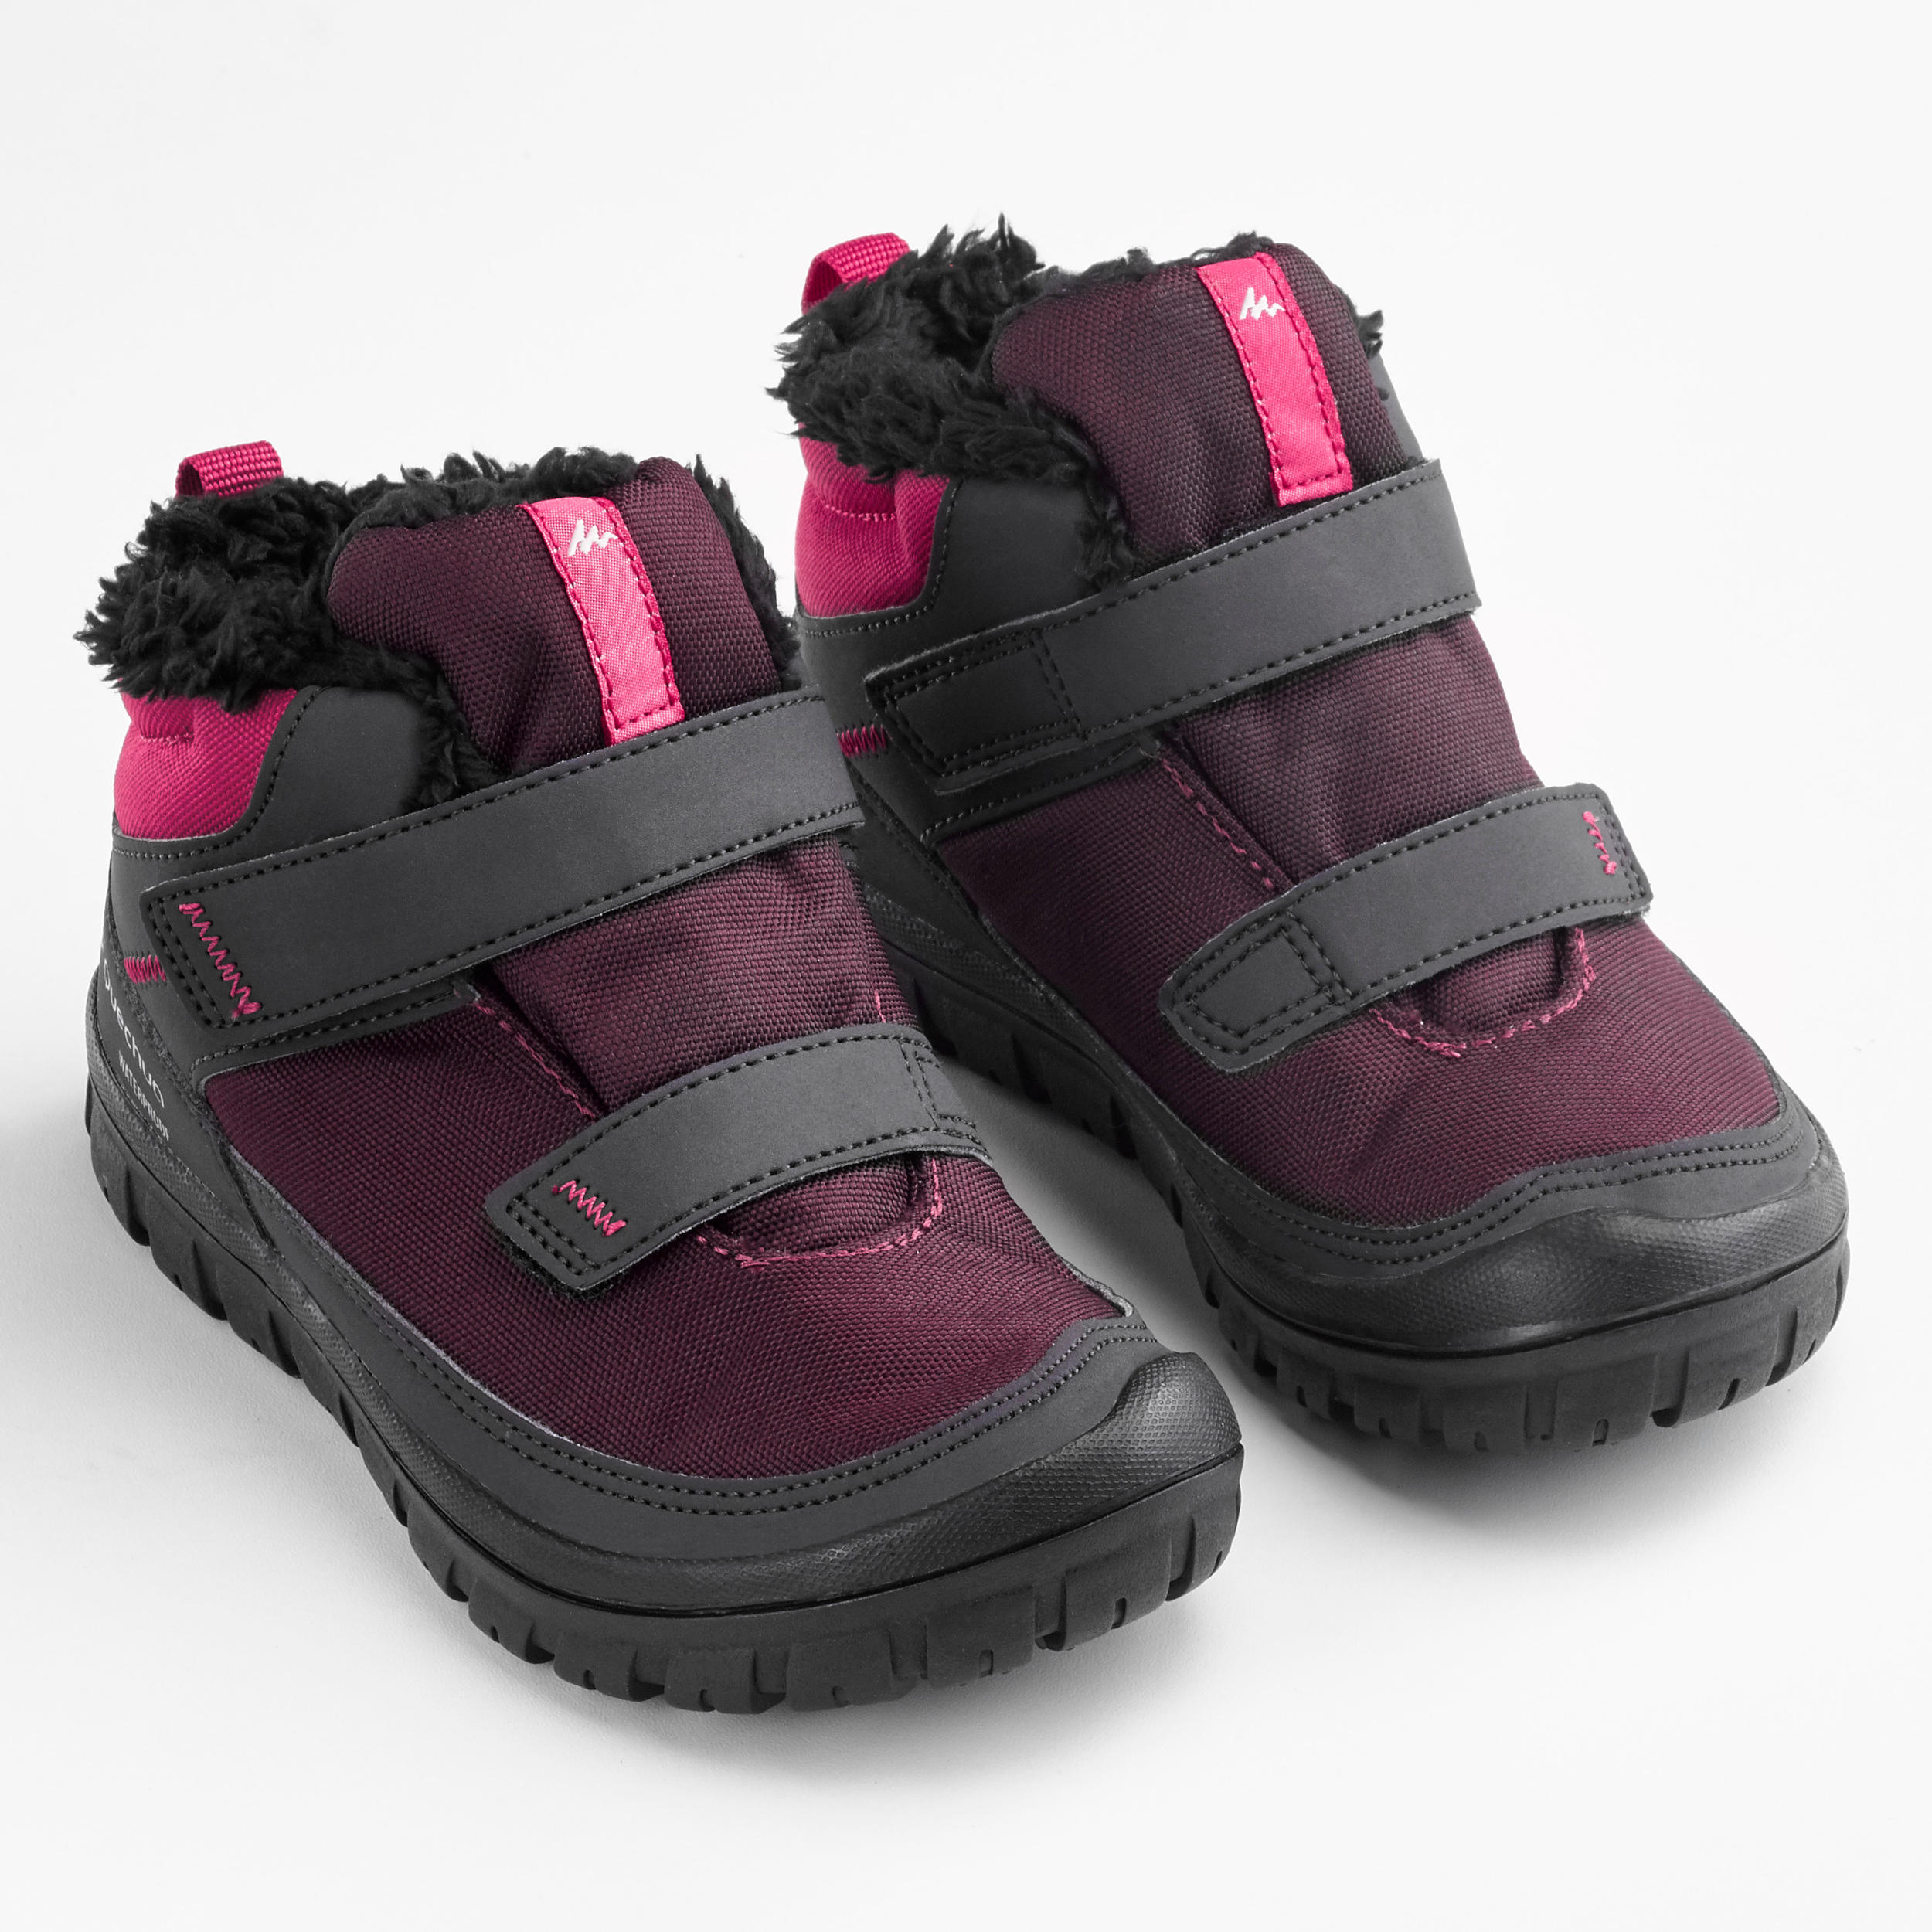 Kids' Winter Boots - SH 100 Purple/Pink - QUECHUA